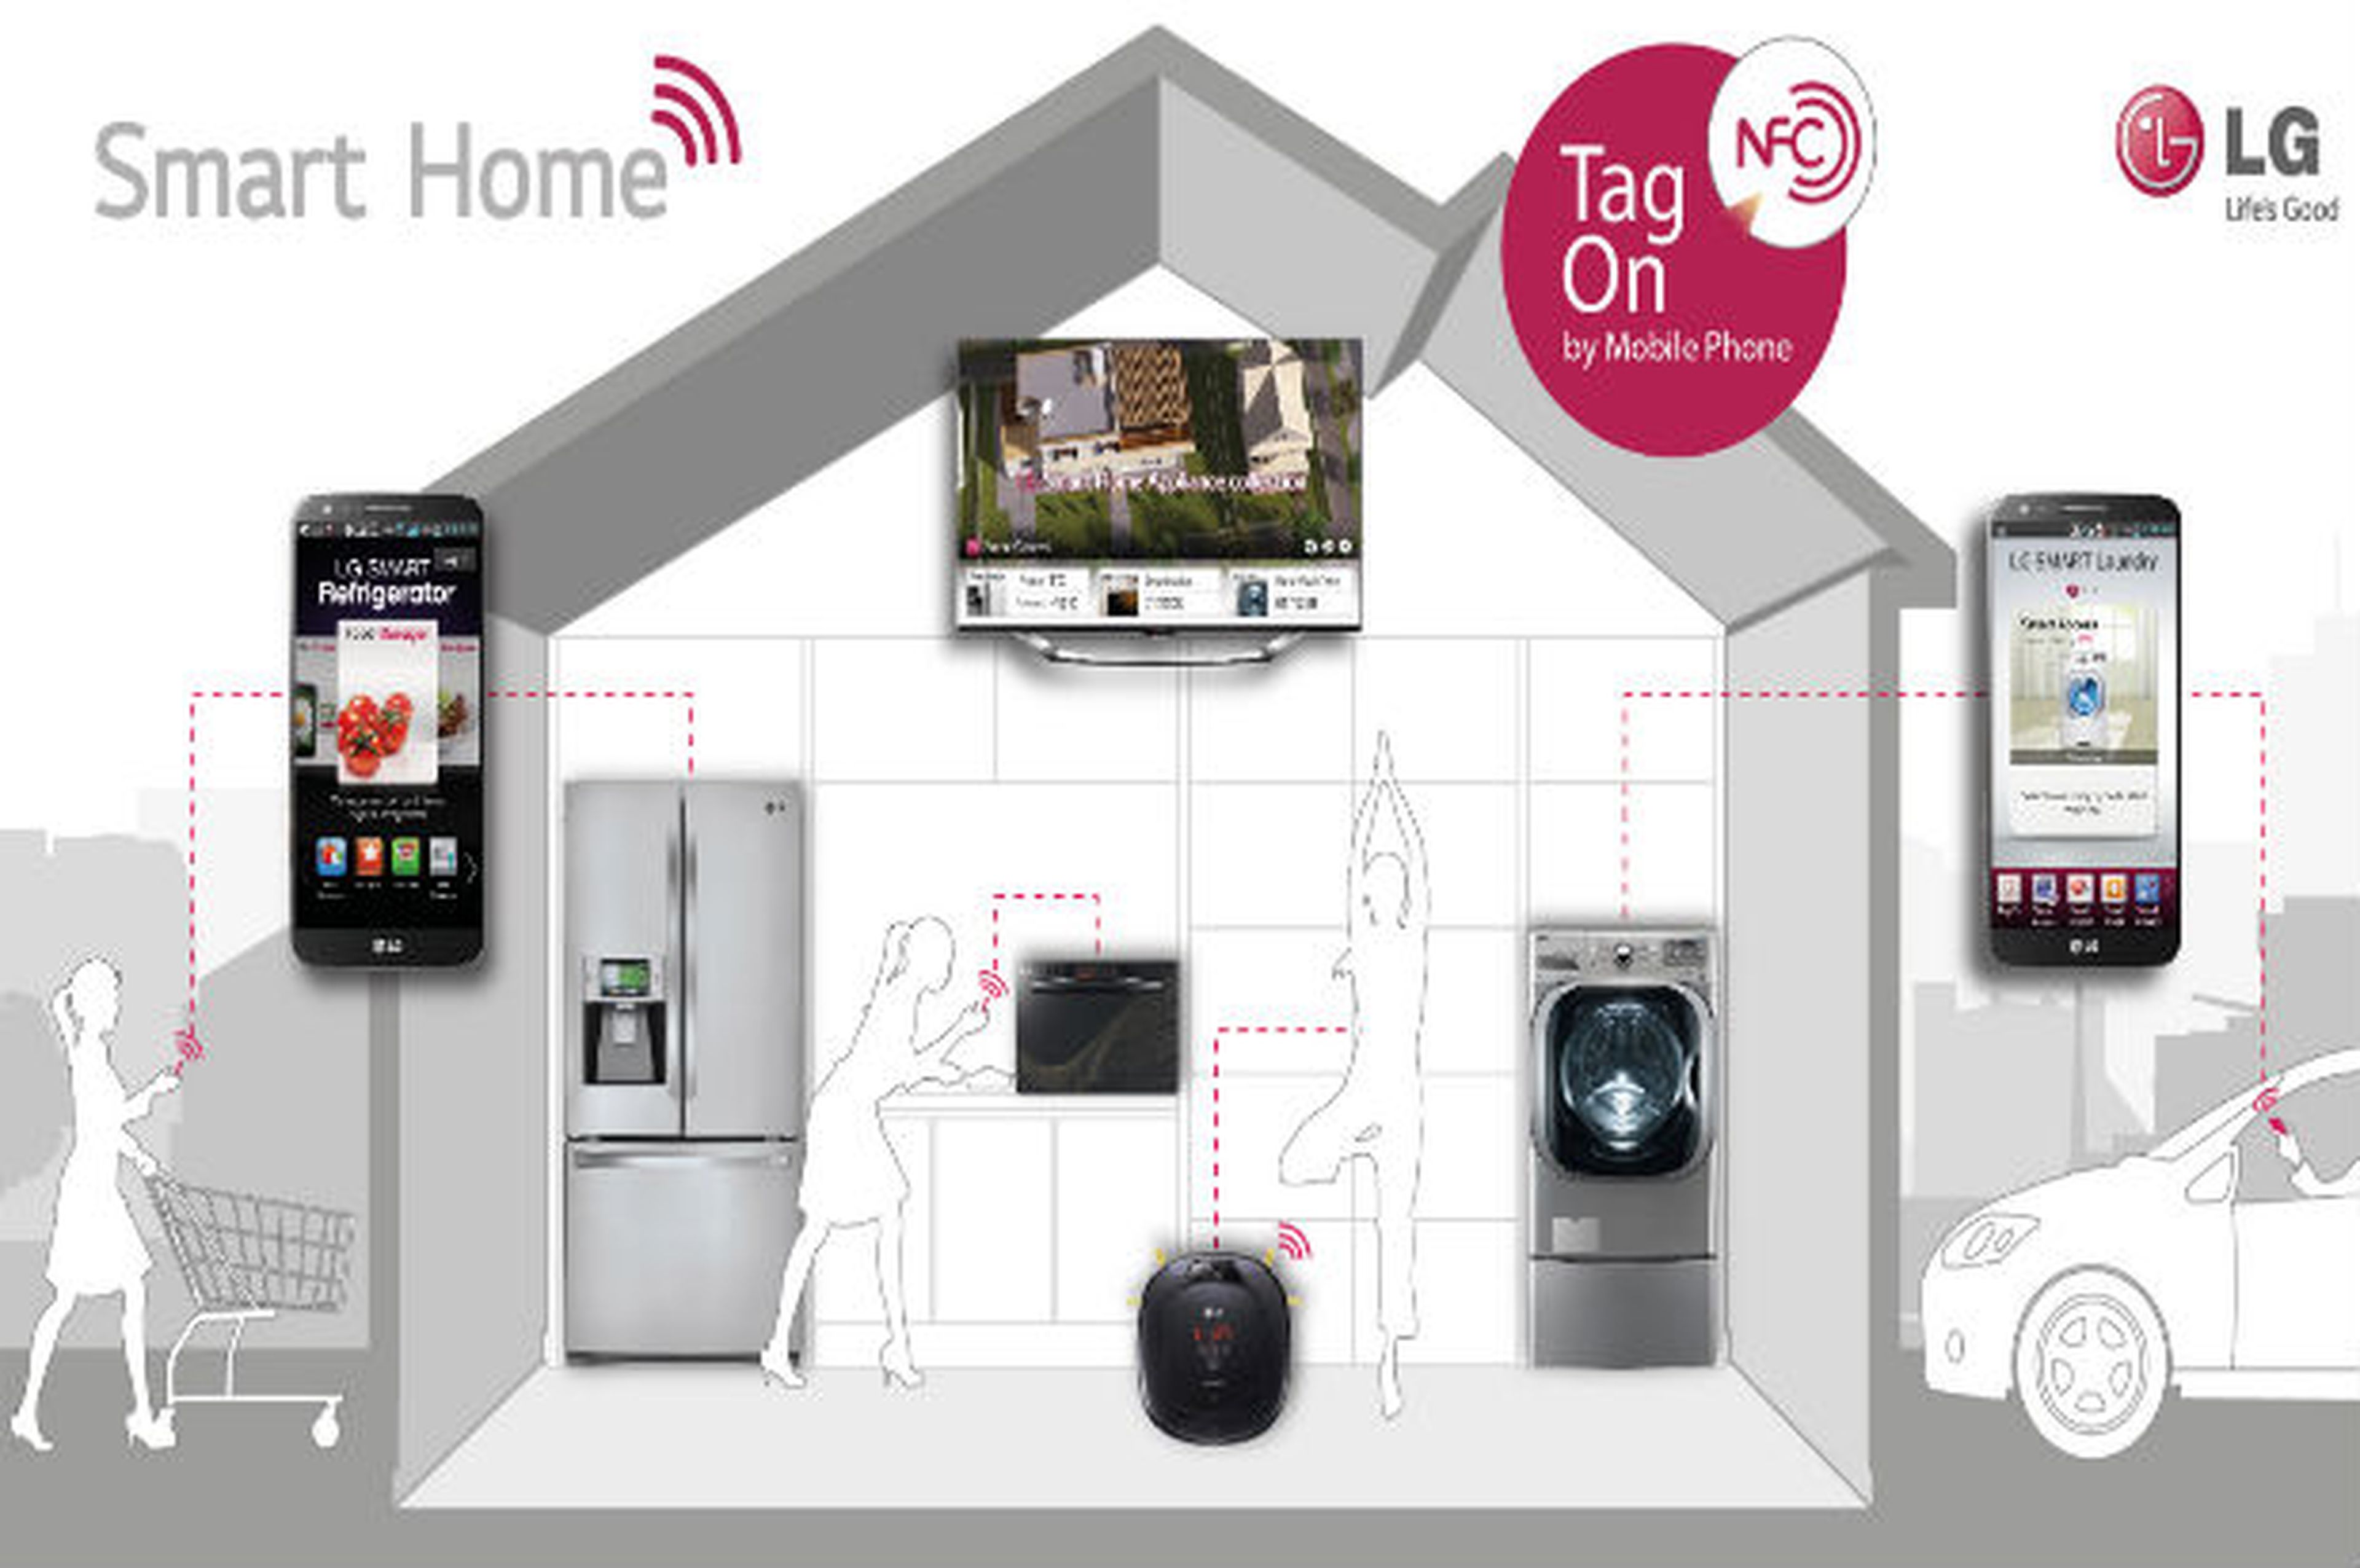 Ocupar Subproducto Reducción de precios LG presenta lo último para el hogar inteligente en IFA 2013 | Computer Hoy